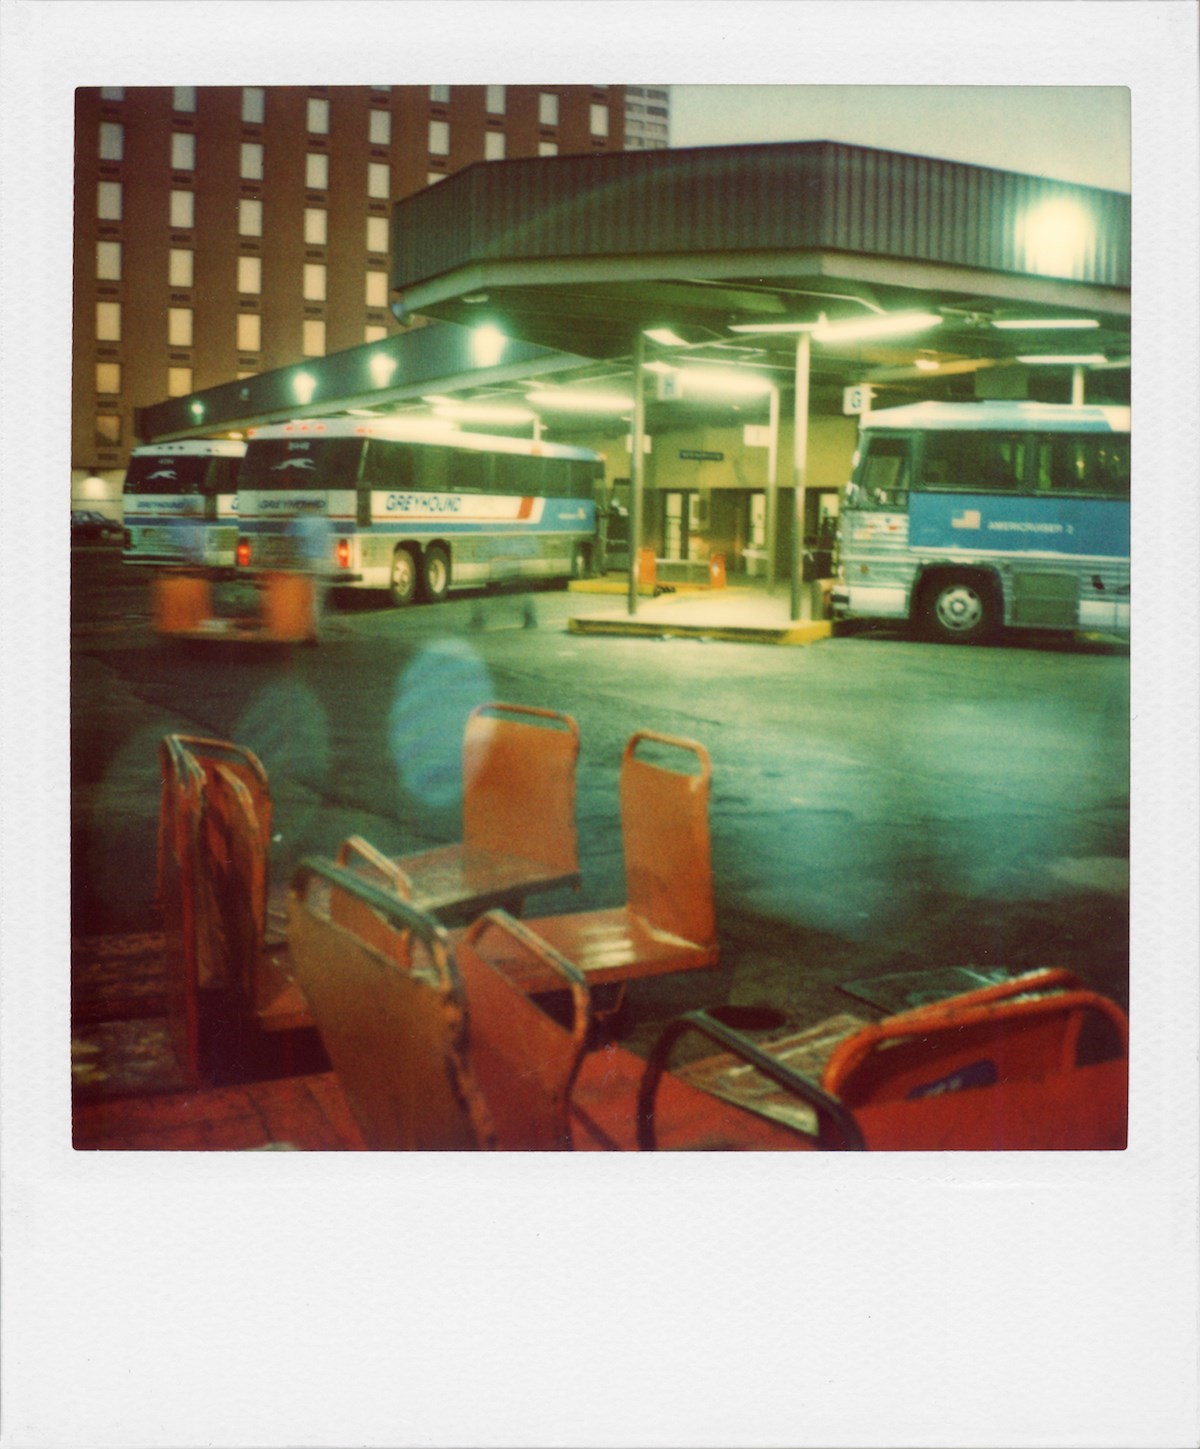 Austin, Texas, 1979 Photography by Robby Müller